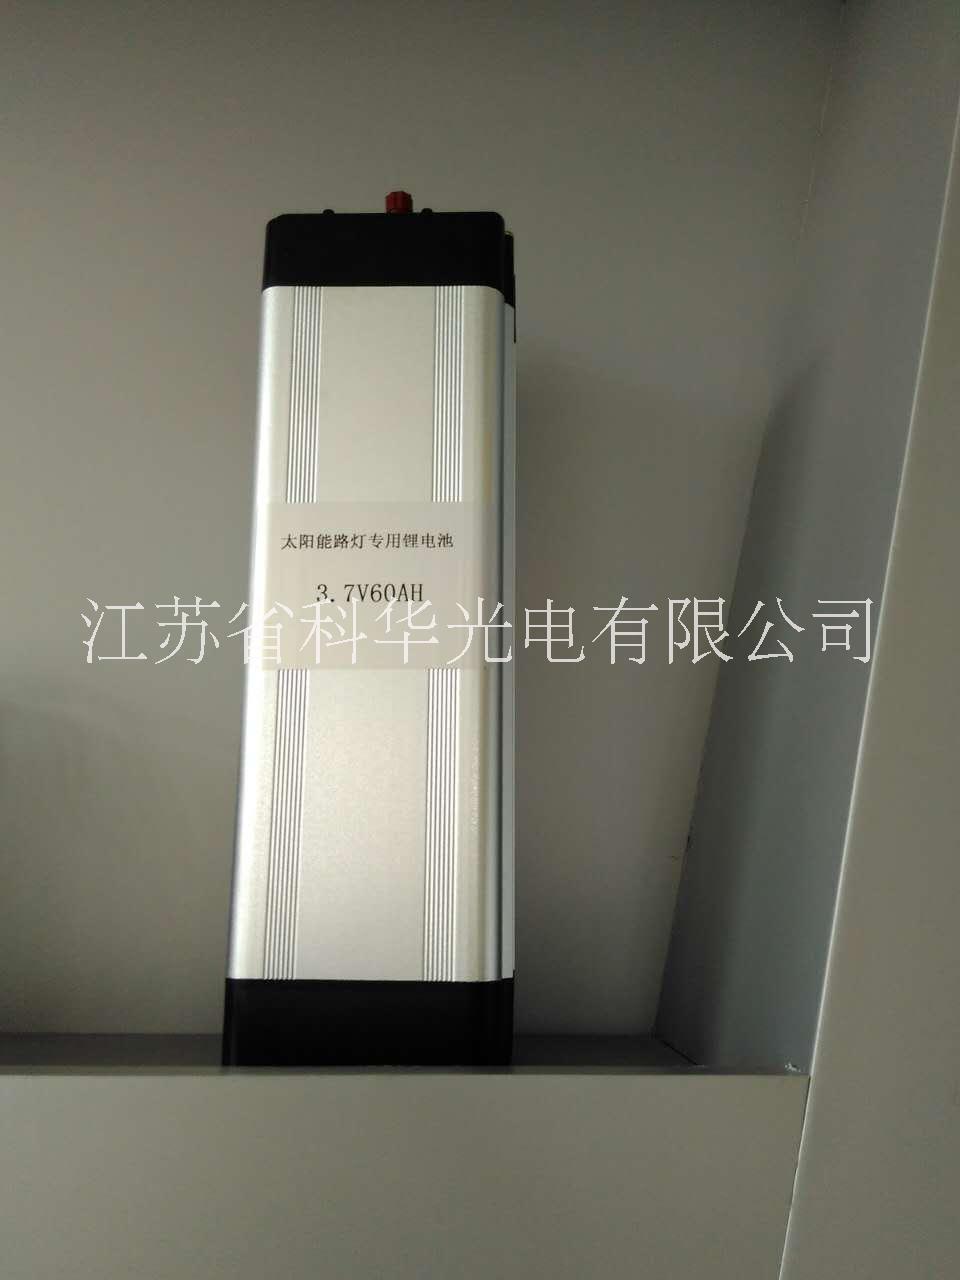 扬州市太阳能路灯用锂电池30AH厂家太阳能路灯用锂电池30AH